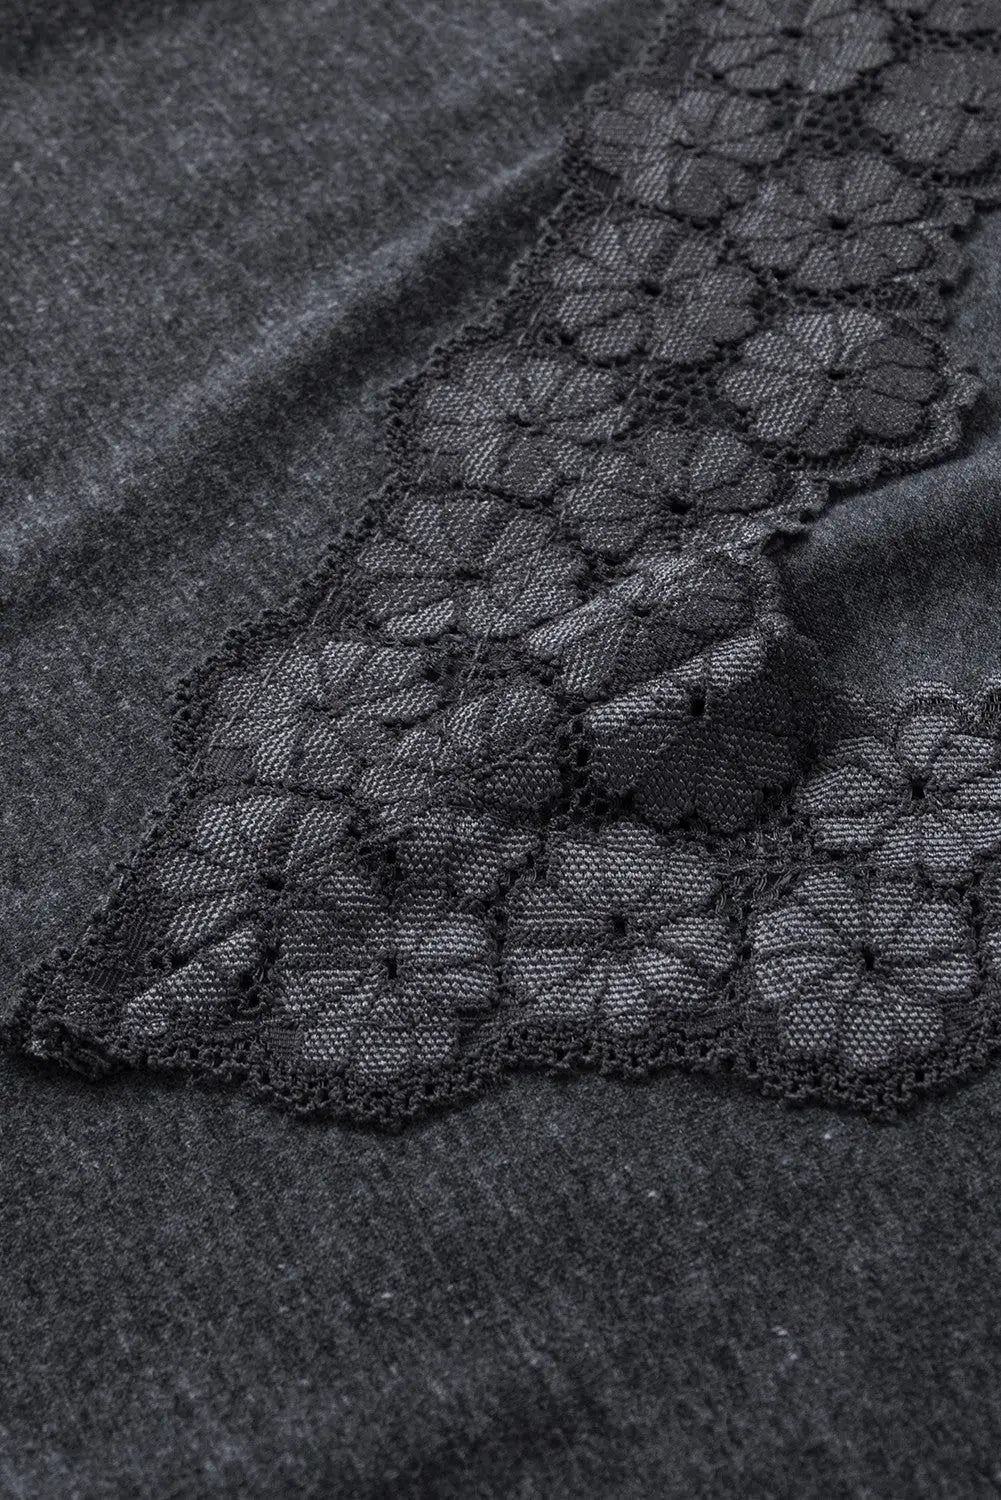 Black lace splicing v neck cami top - tops